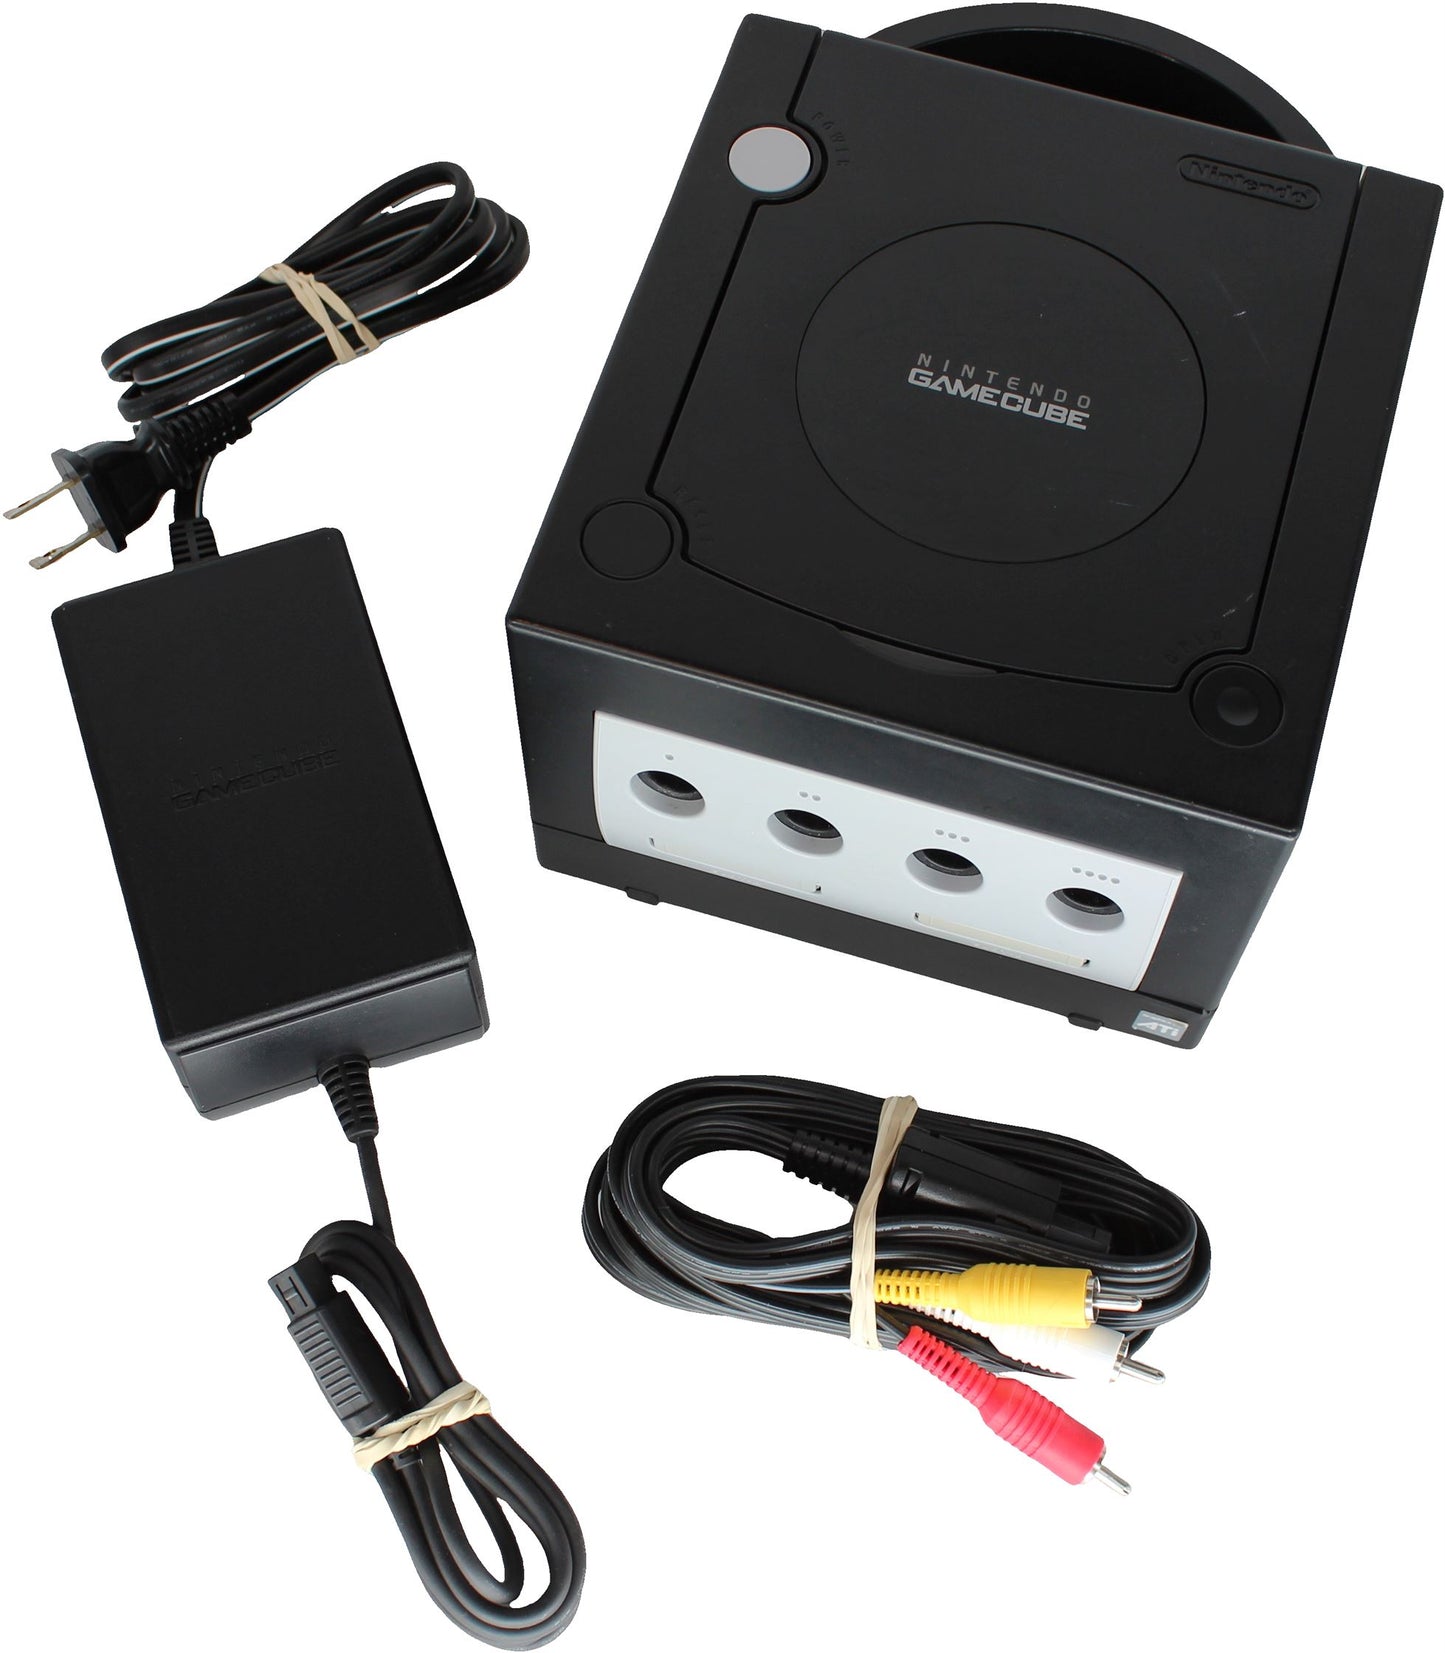 Nintendo GameCube (GC) Console (DOL-001)